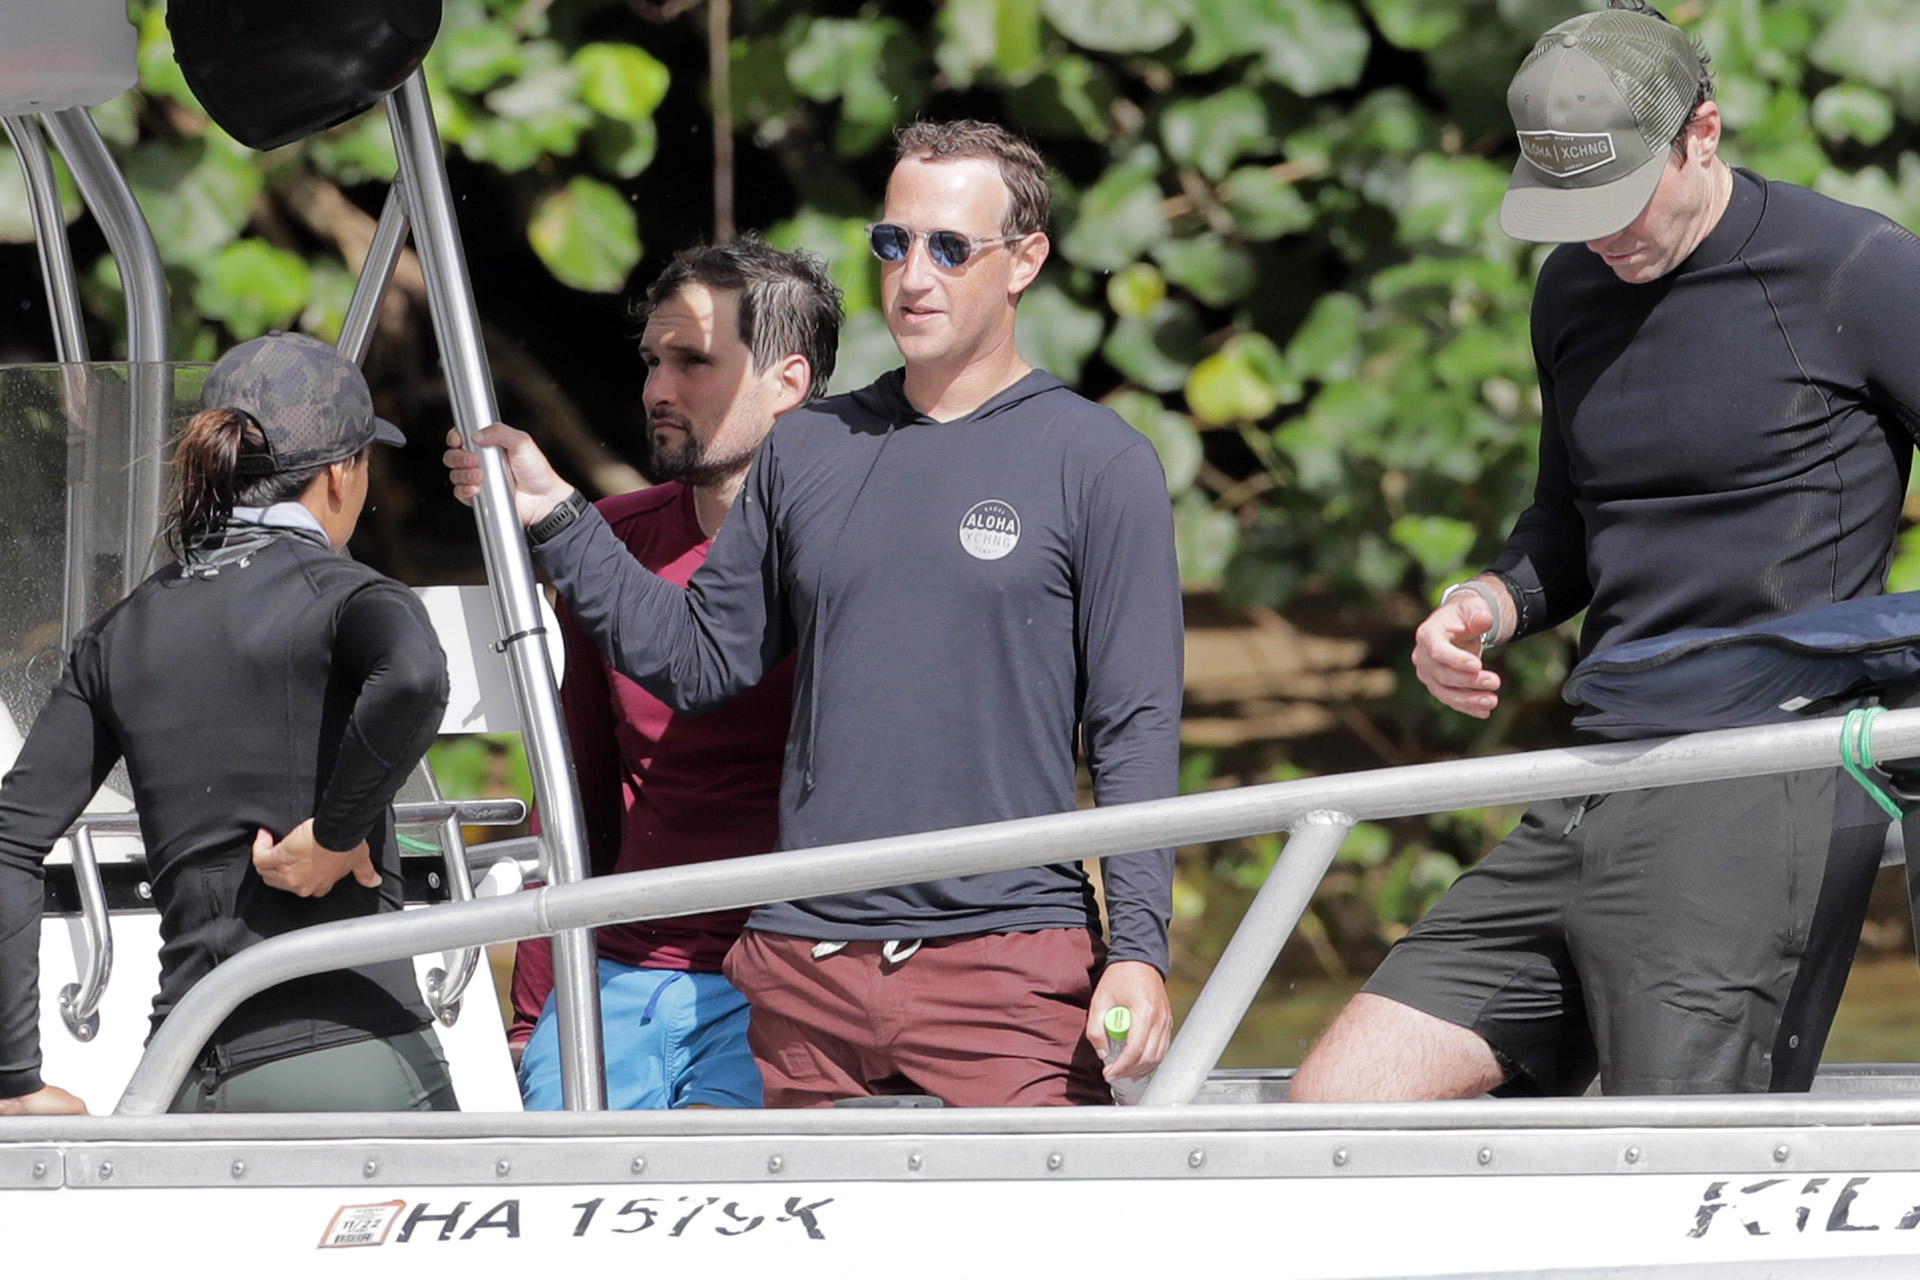 El creador de Facebook, Mark Zuckerberg fue fotografiado en un gran barco junto con amigos en Hawai